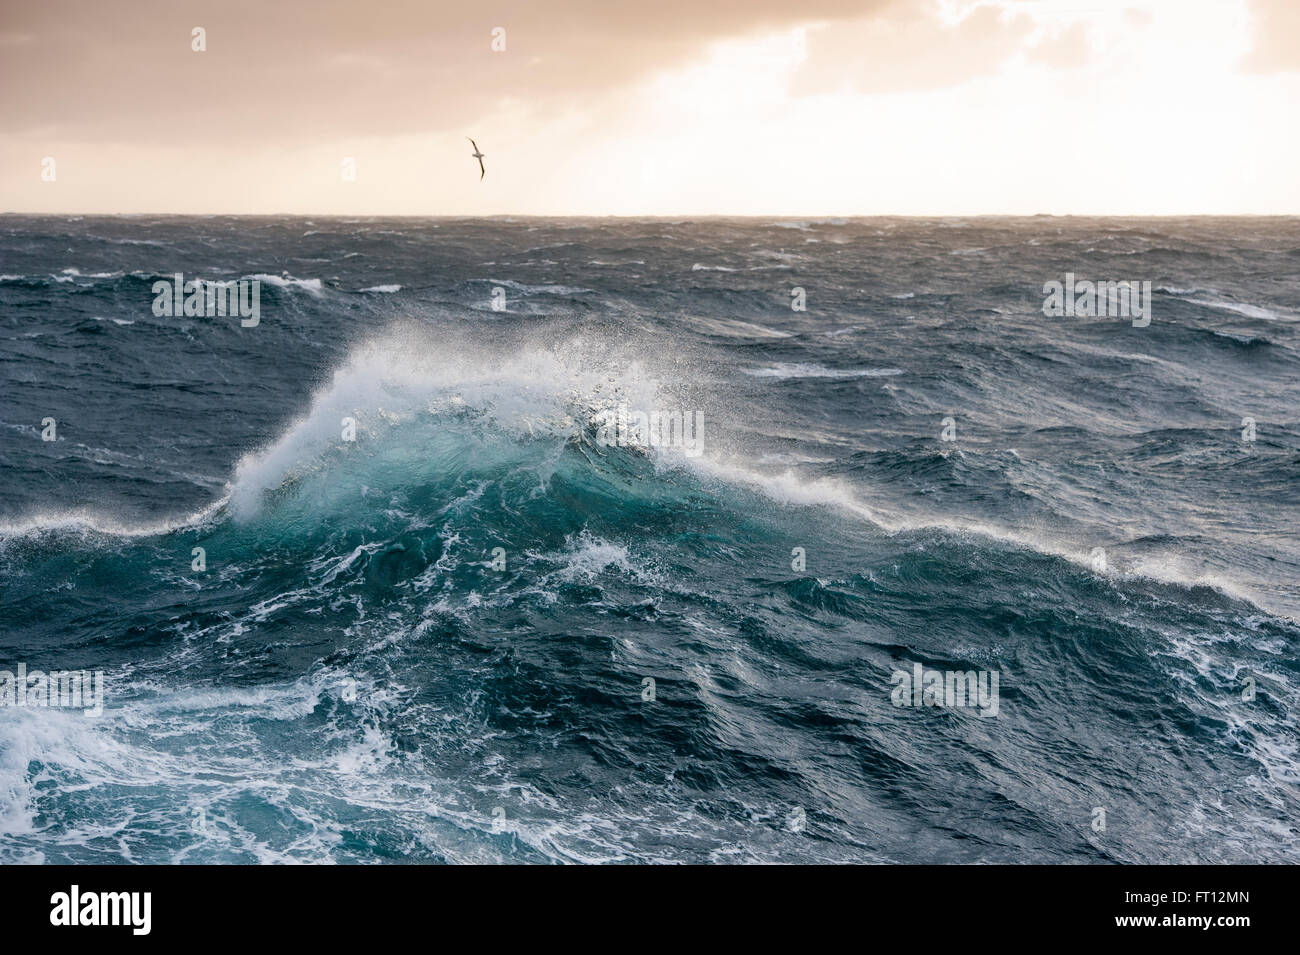 Un albatros planeur au-dessus de hautes vagues dans de très grosse mer dans l'océan du sud, près de Îles Malouines, territoire britannique d'outre-mer, de l'Amérique du Sud Banque D'Images